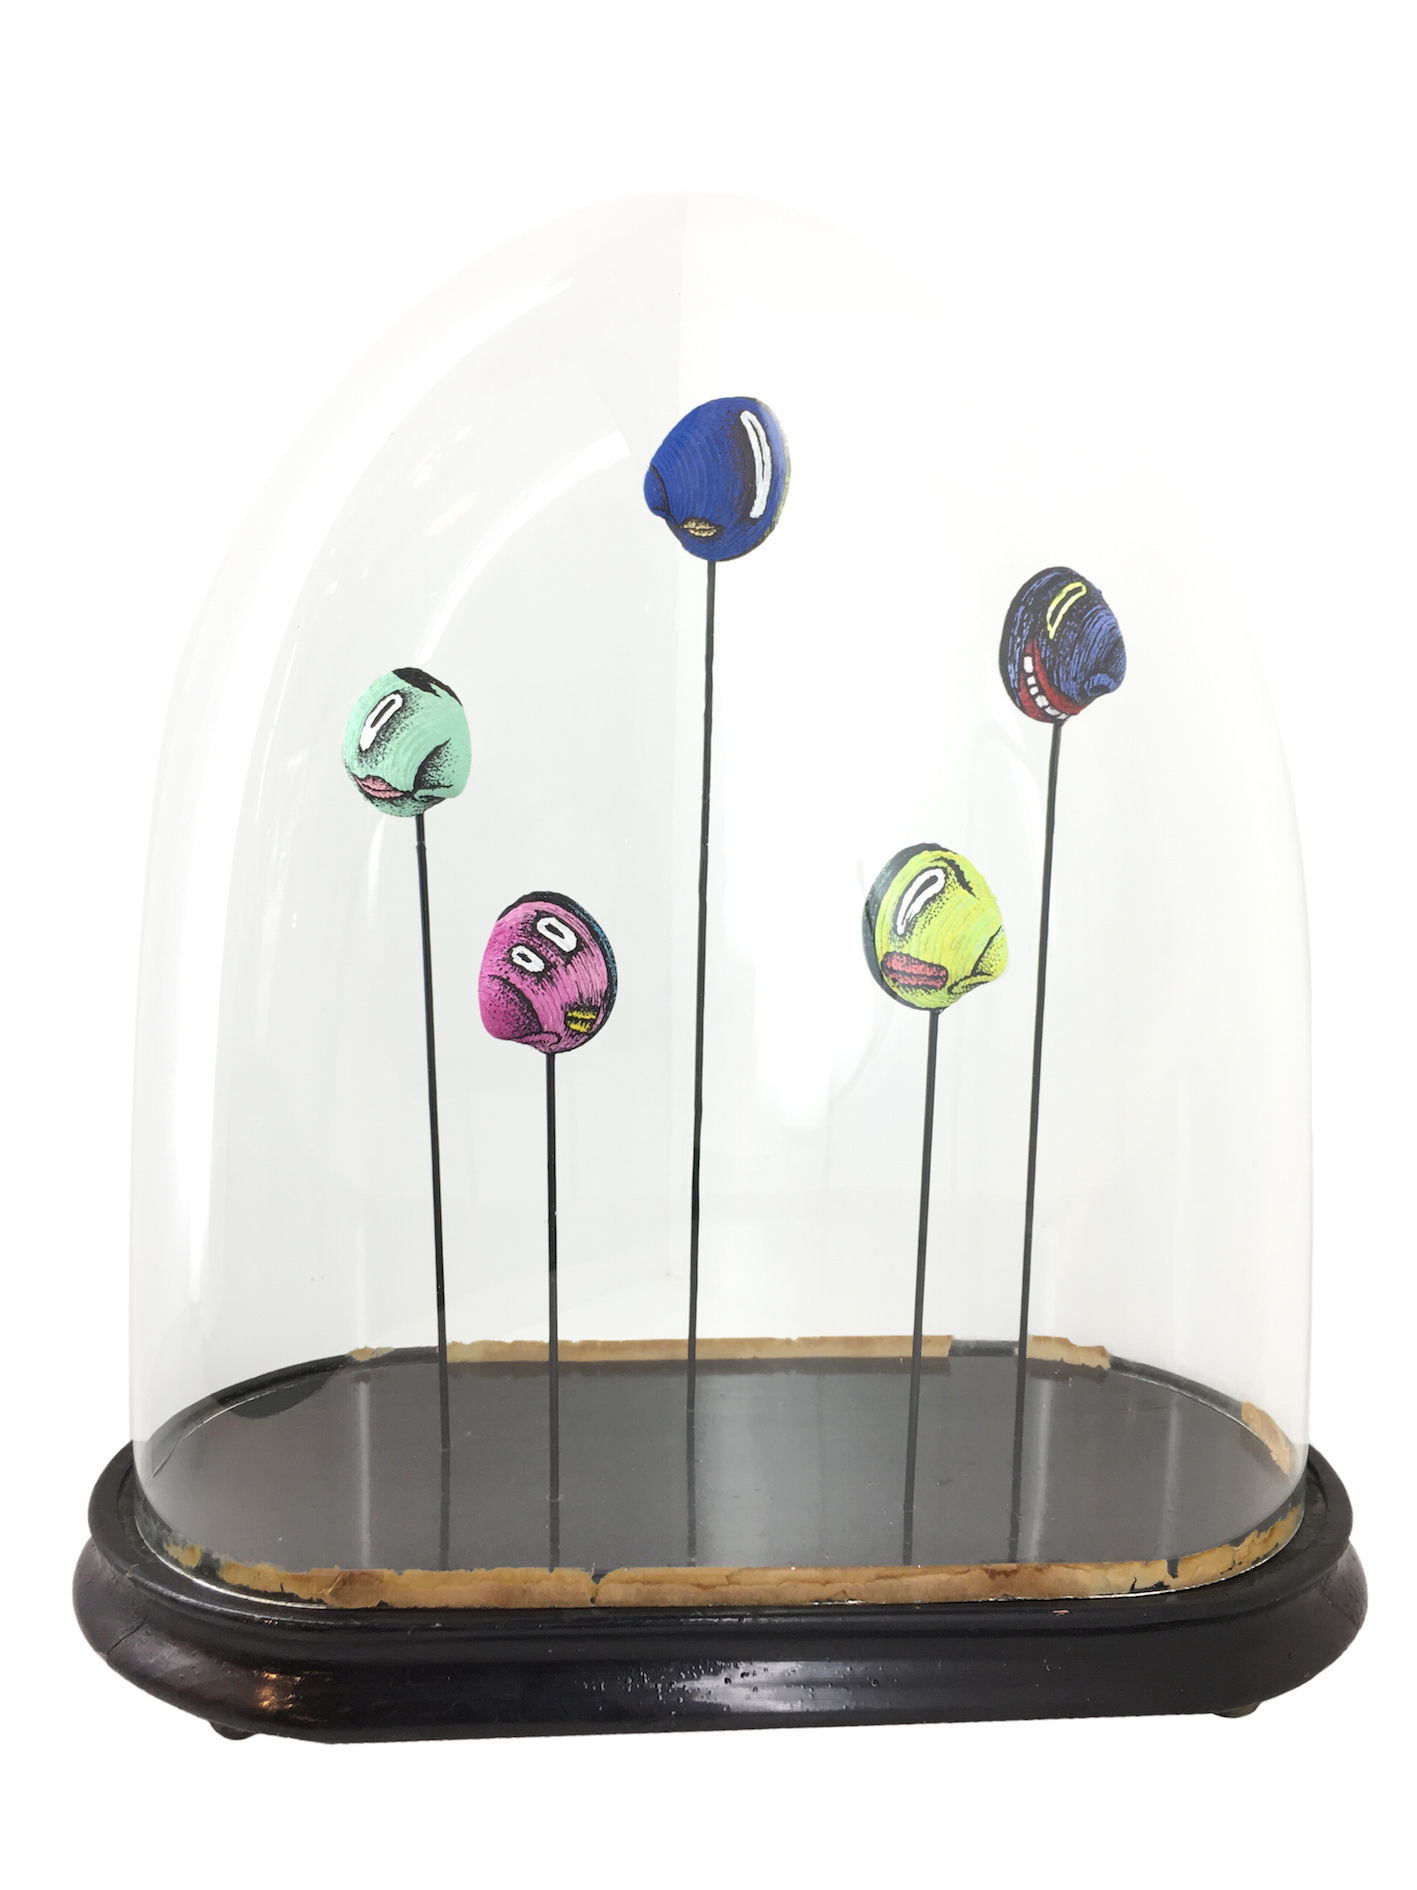 Composition avec 5 coquillages peints sur tiges acier sous globe en verre ancien à base noire sur fond blanc